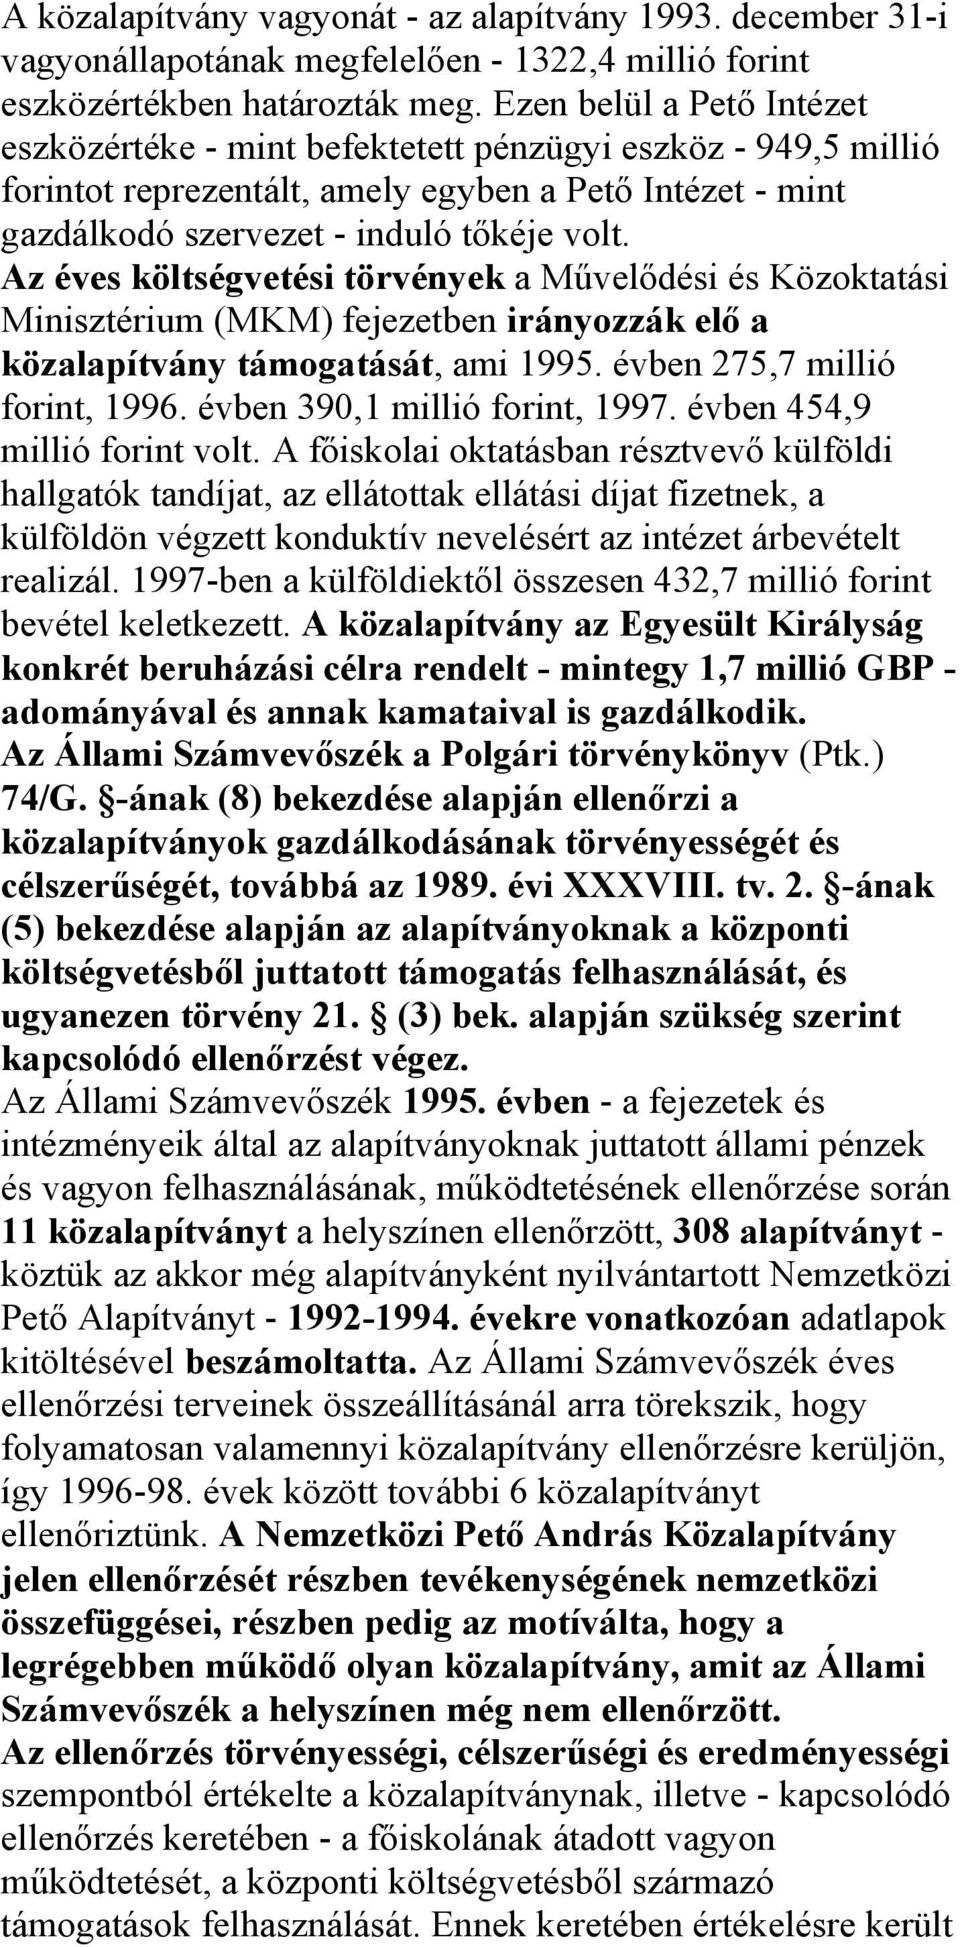 Az éves költségvetési törvények a Művelődési és Közoktatási Minisztérium (MKM) fejezetben irányozzák elő a közalapítvány támogatását, ami 1995. évben 275,7 millió forint, 1996.